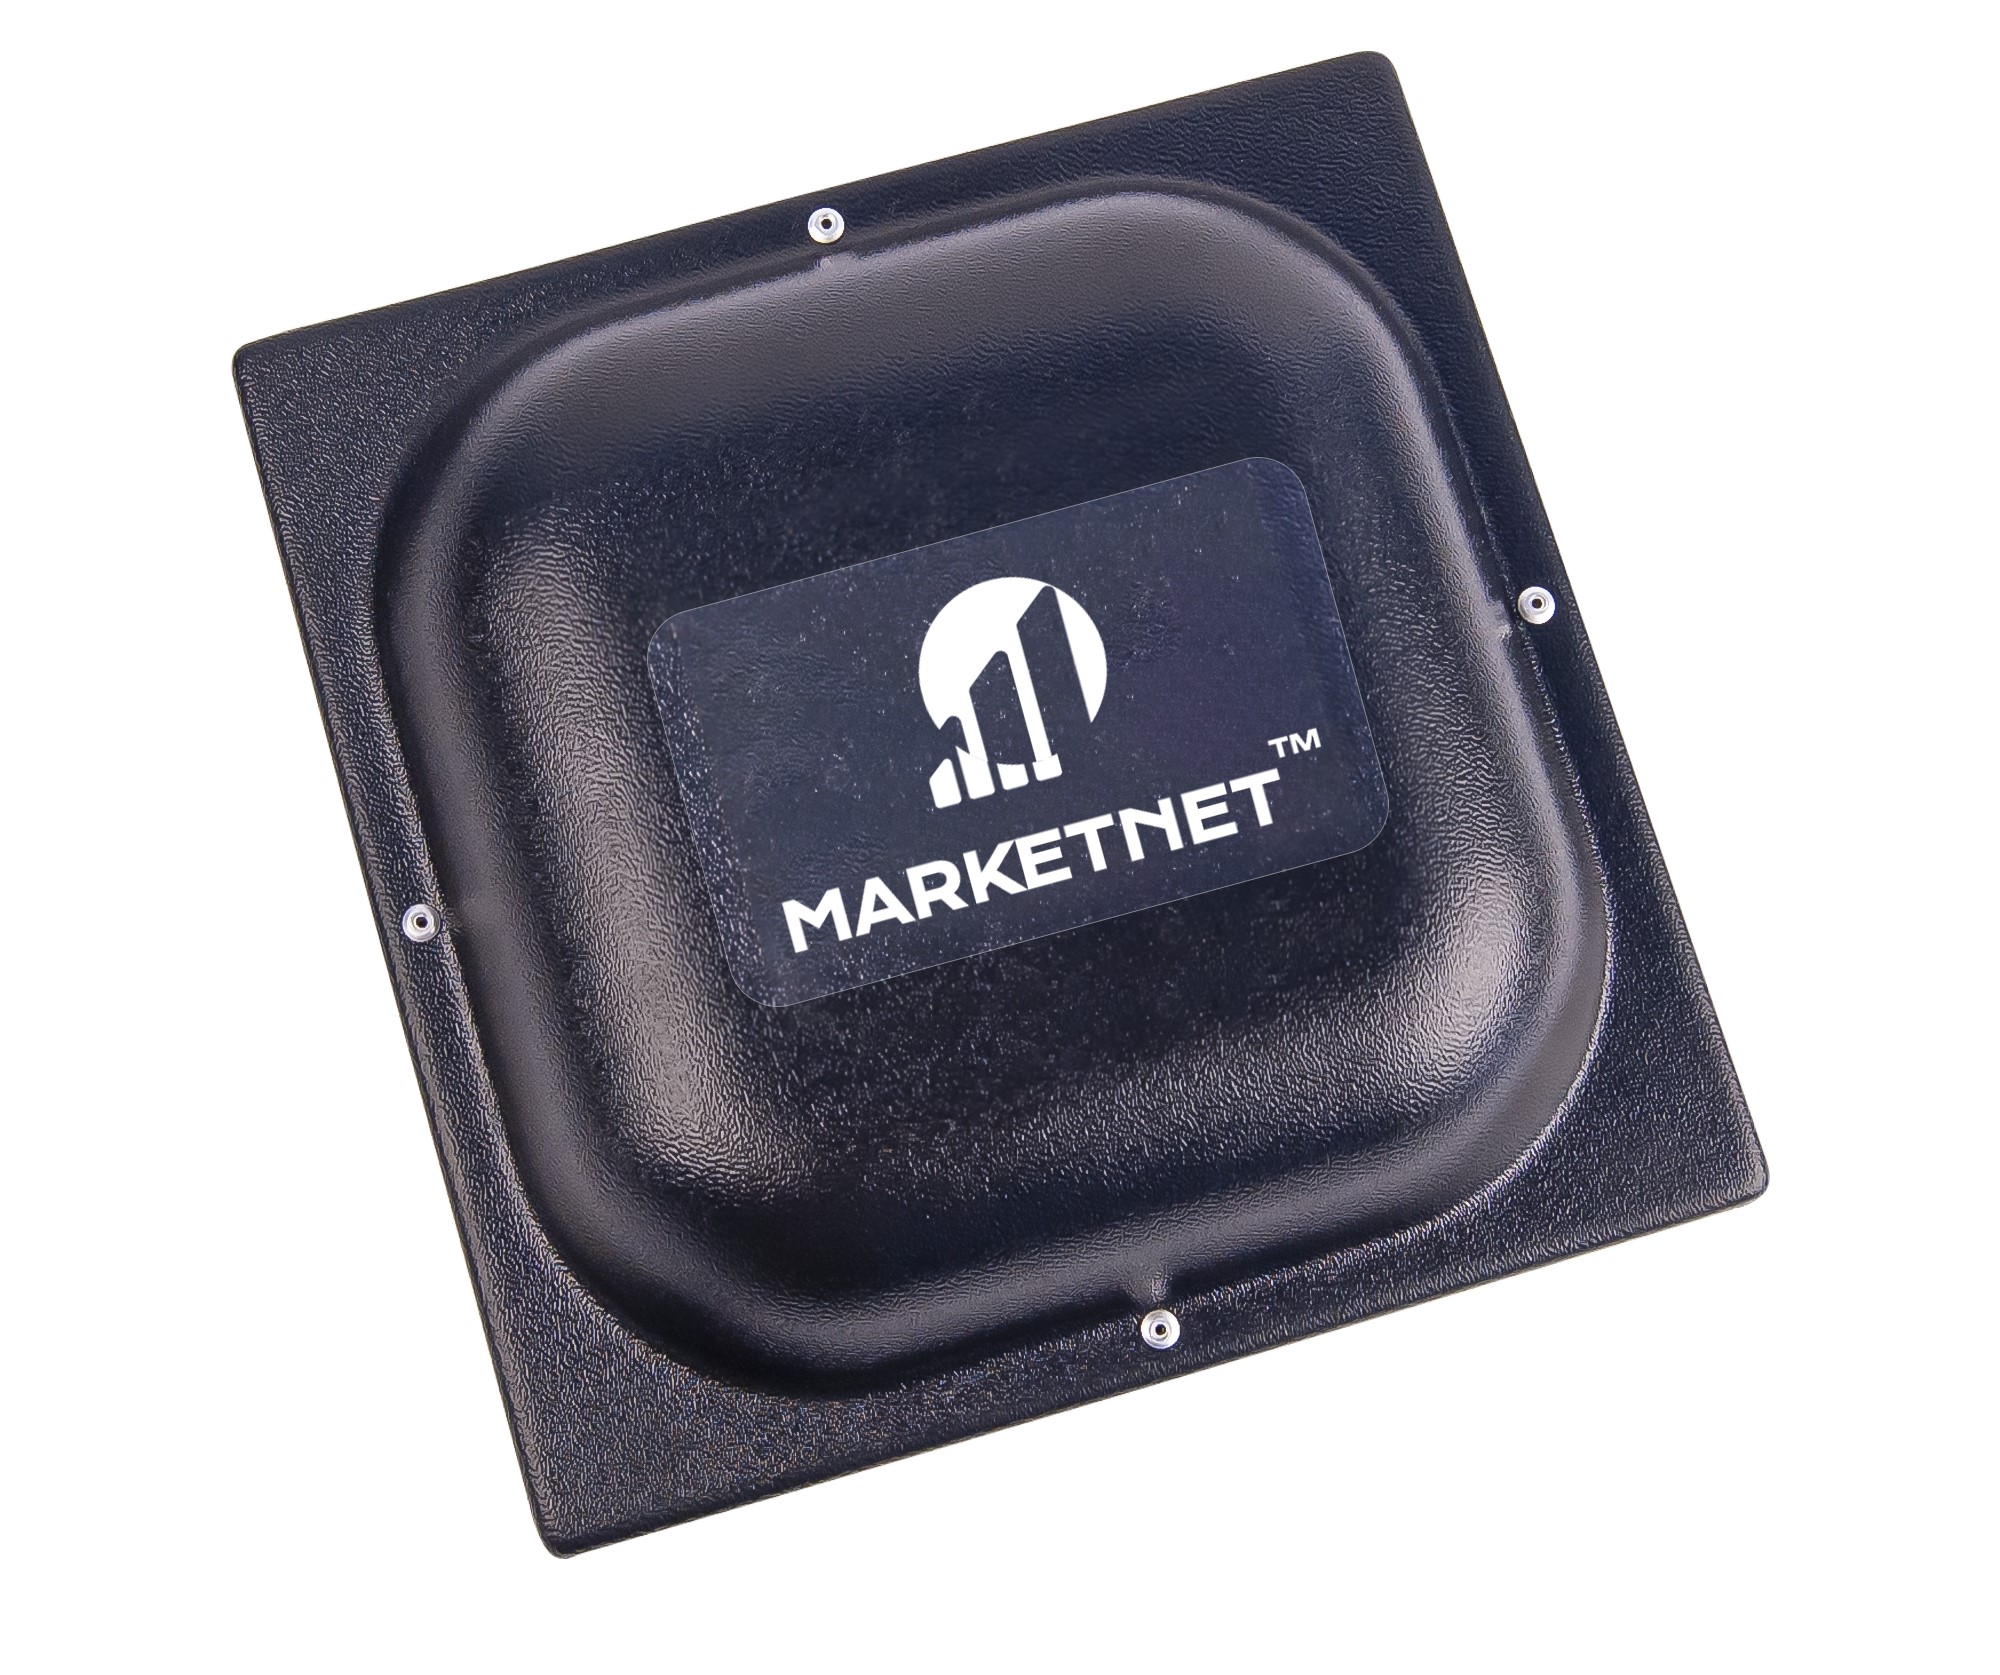 Купити 4G антену панельну Маркетнет Т800 для посилення сигналу мобільного зв'язку та інтернету в інтернет-магазині marketnet.com.ua. Фото - панельна антена MIMO Marketnet T800